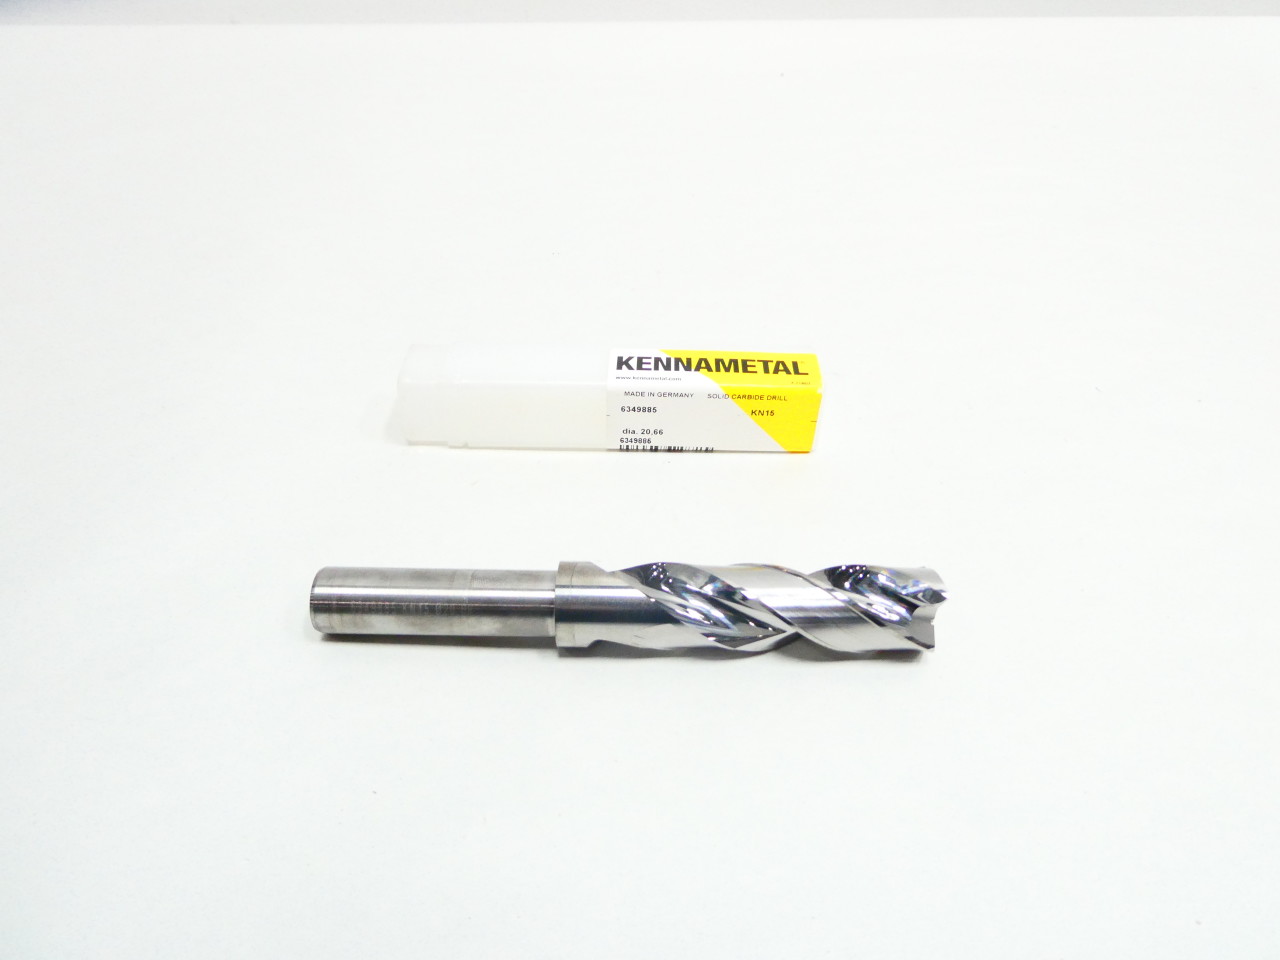 Kennametal 6349885 KN15 Solid Carbide Drill Bit 20.66mm